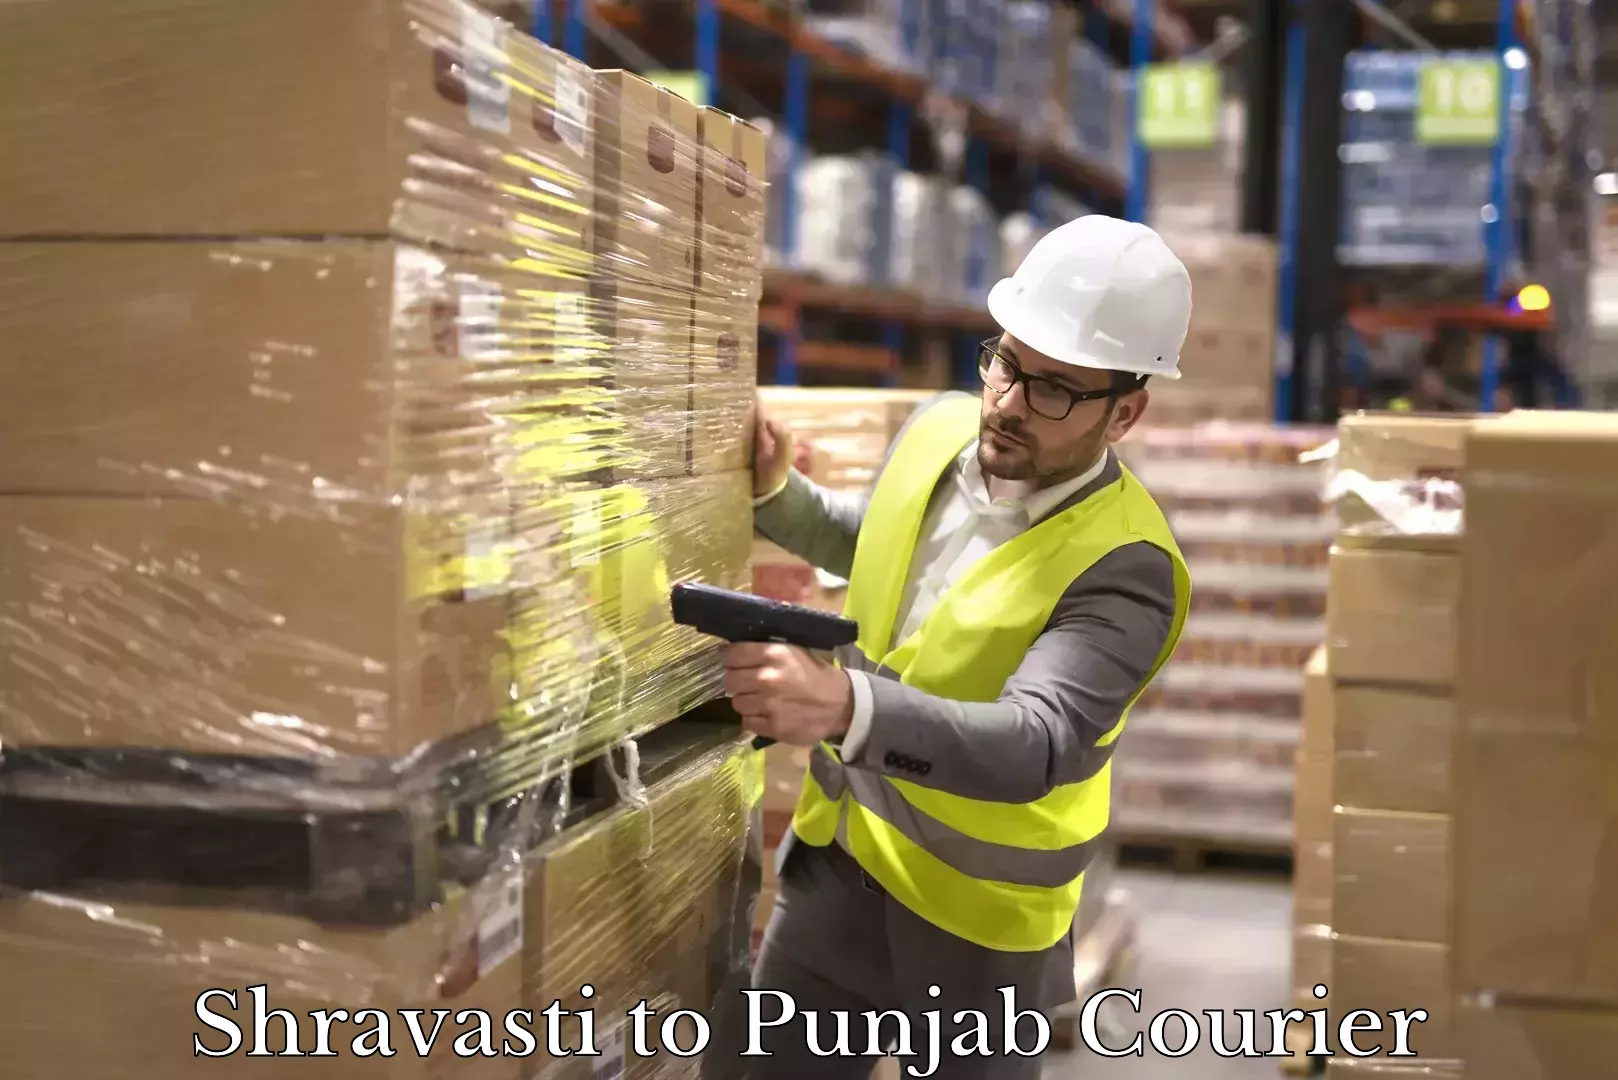 Customer-centric shipping Shravasti to Punjab